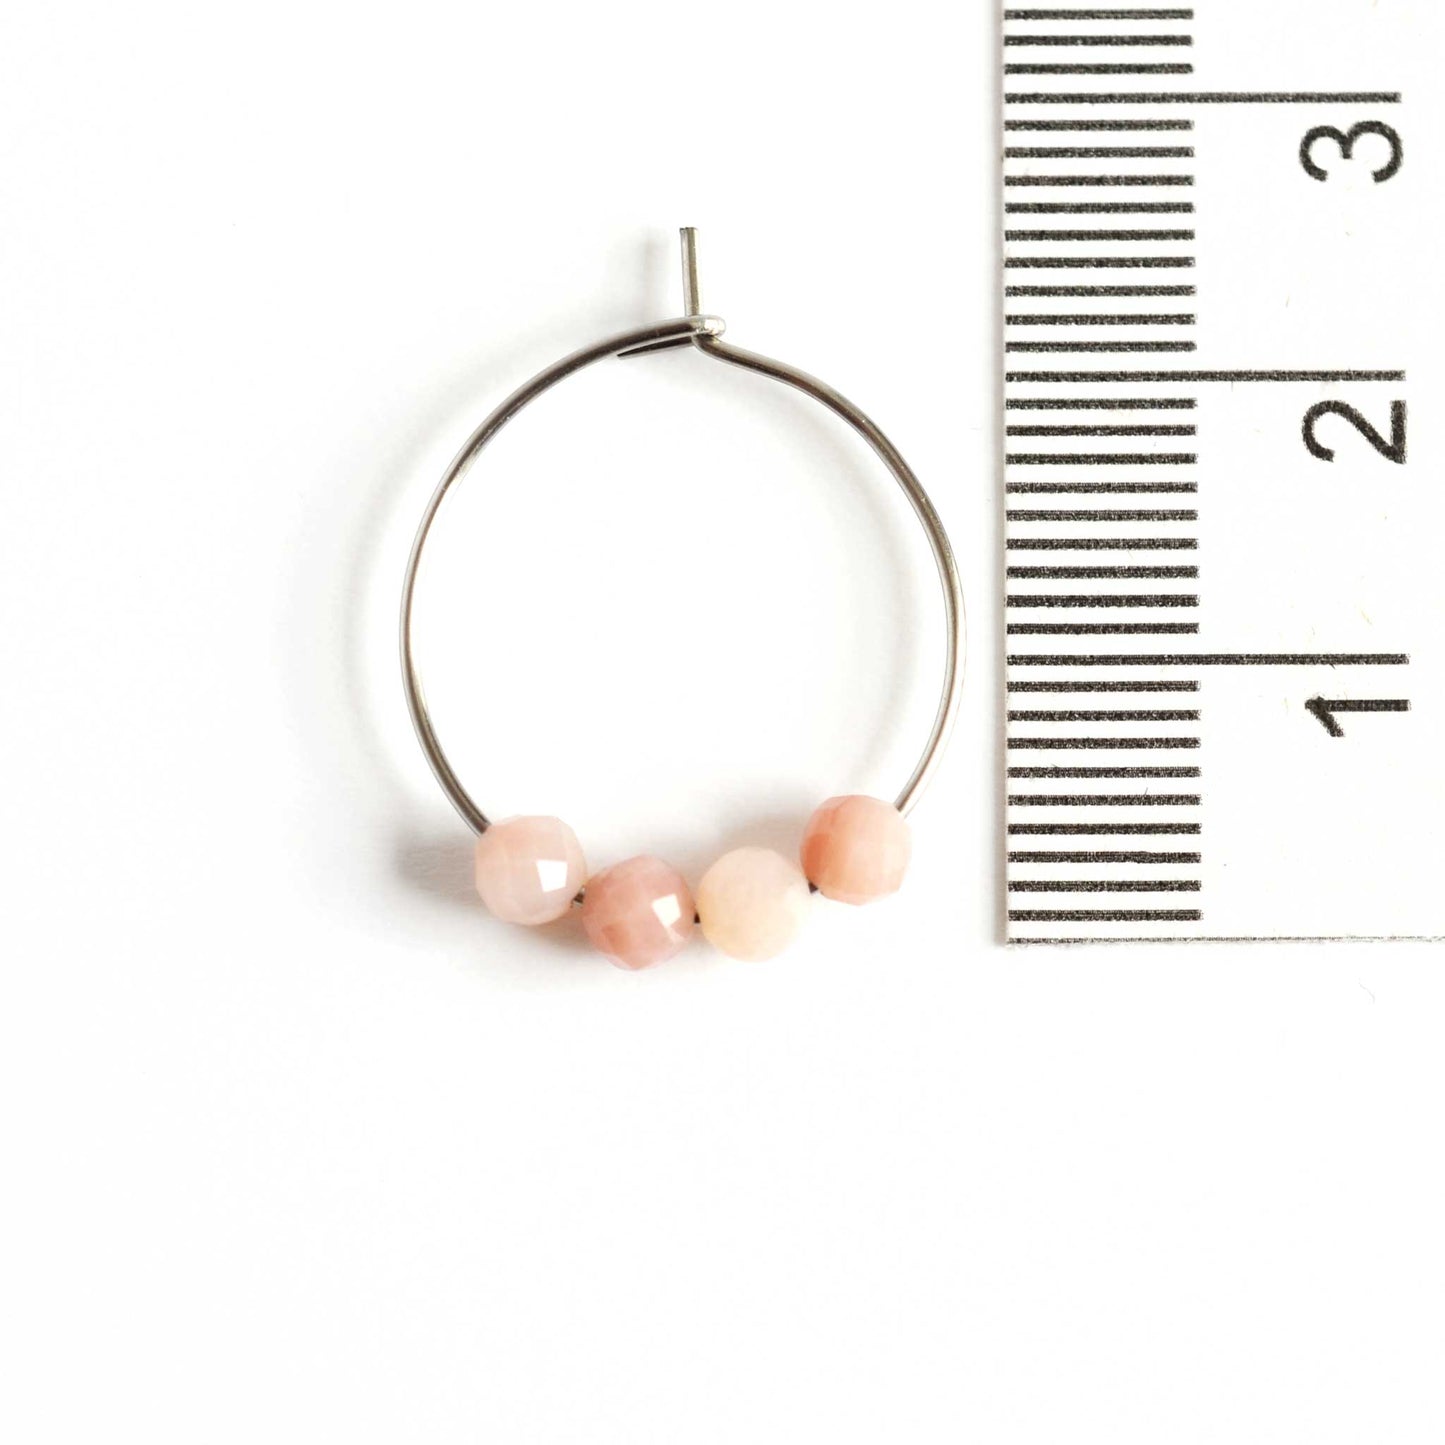 2cm diameter Pink Opal hoop earrings next to ruler